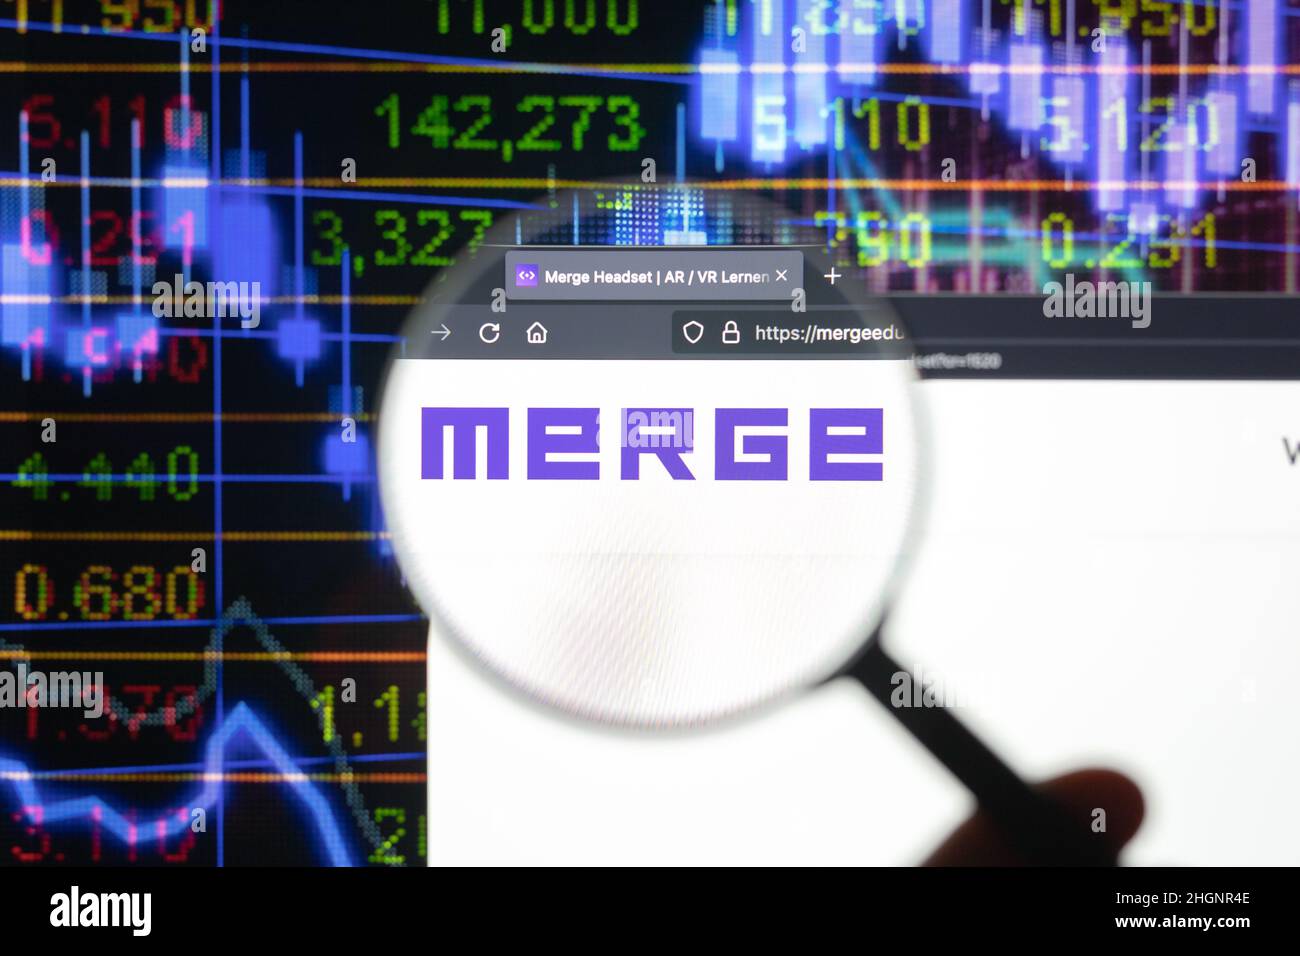 Fusione el logotipo de la empresa en un sitio web con la evolución borrosa del mercado de valores en segundo plano, visto en una pantalla de ordenador a través de una lupa. Foto de stock